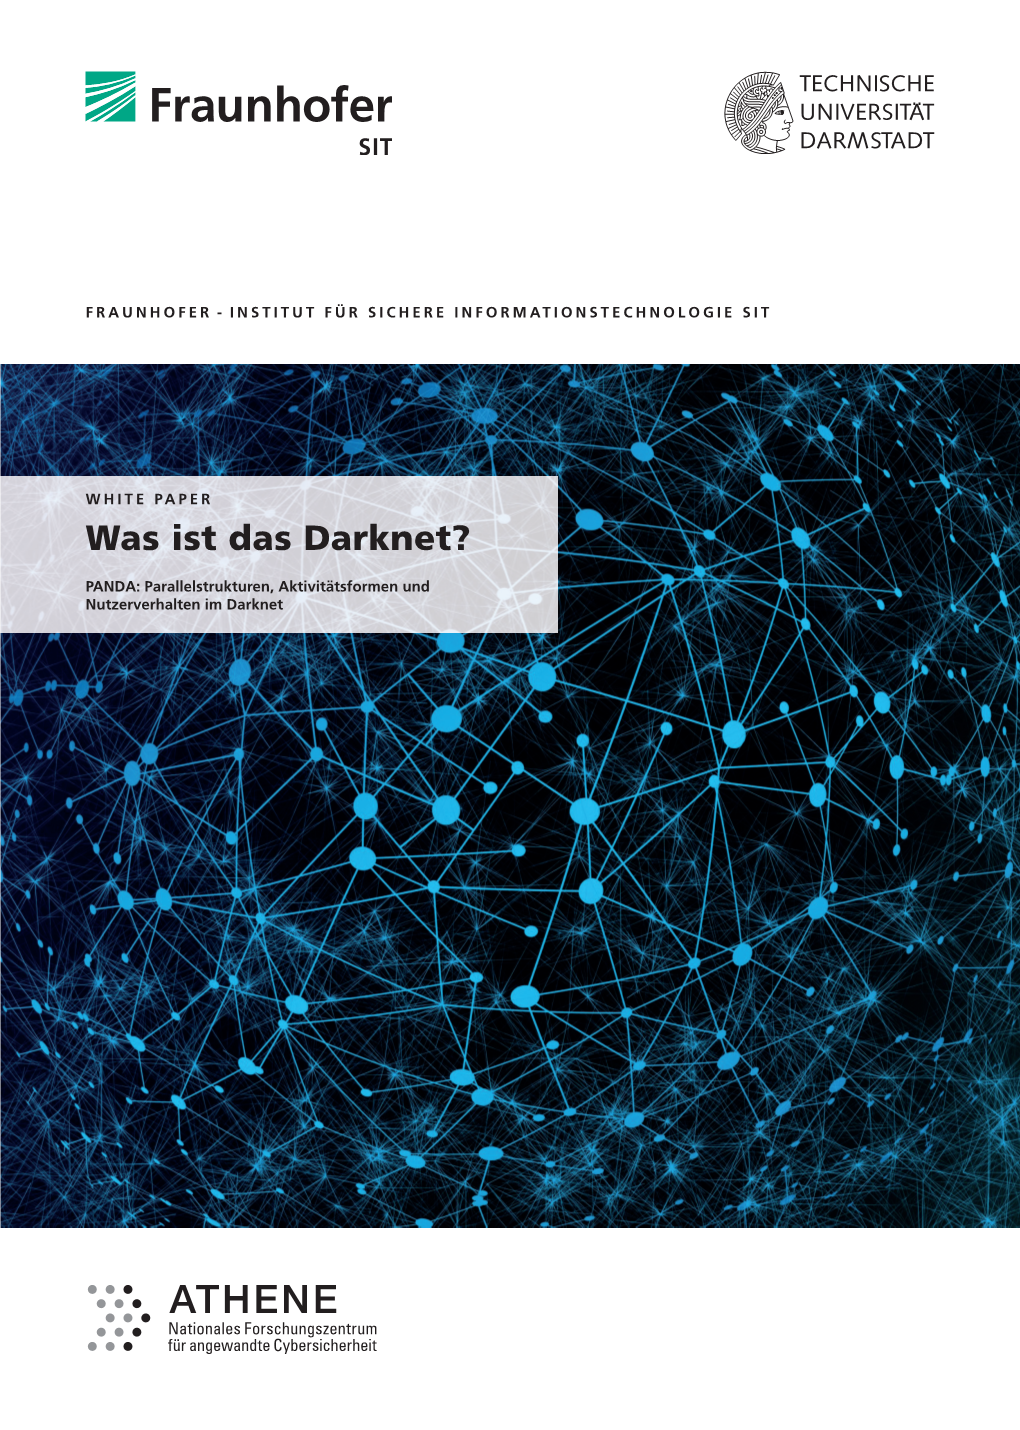 WHITE PAPER Was Ist Das Darknet?